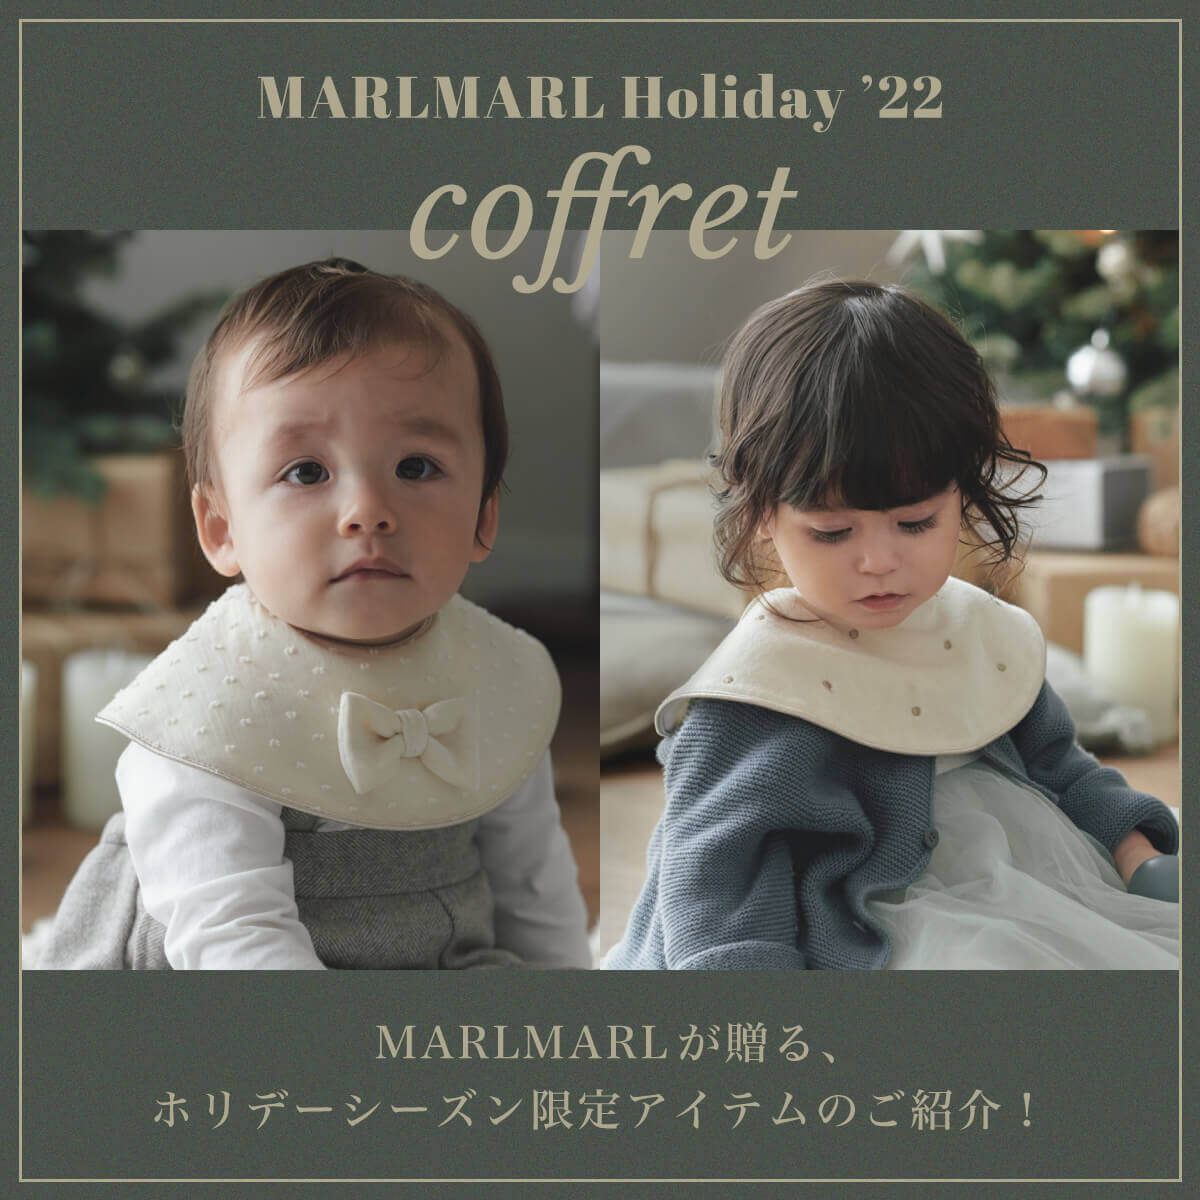 MARLMARL Holiday'22限定コフレが登場！